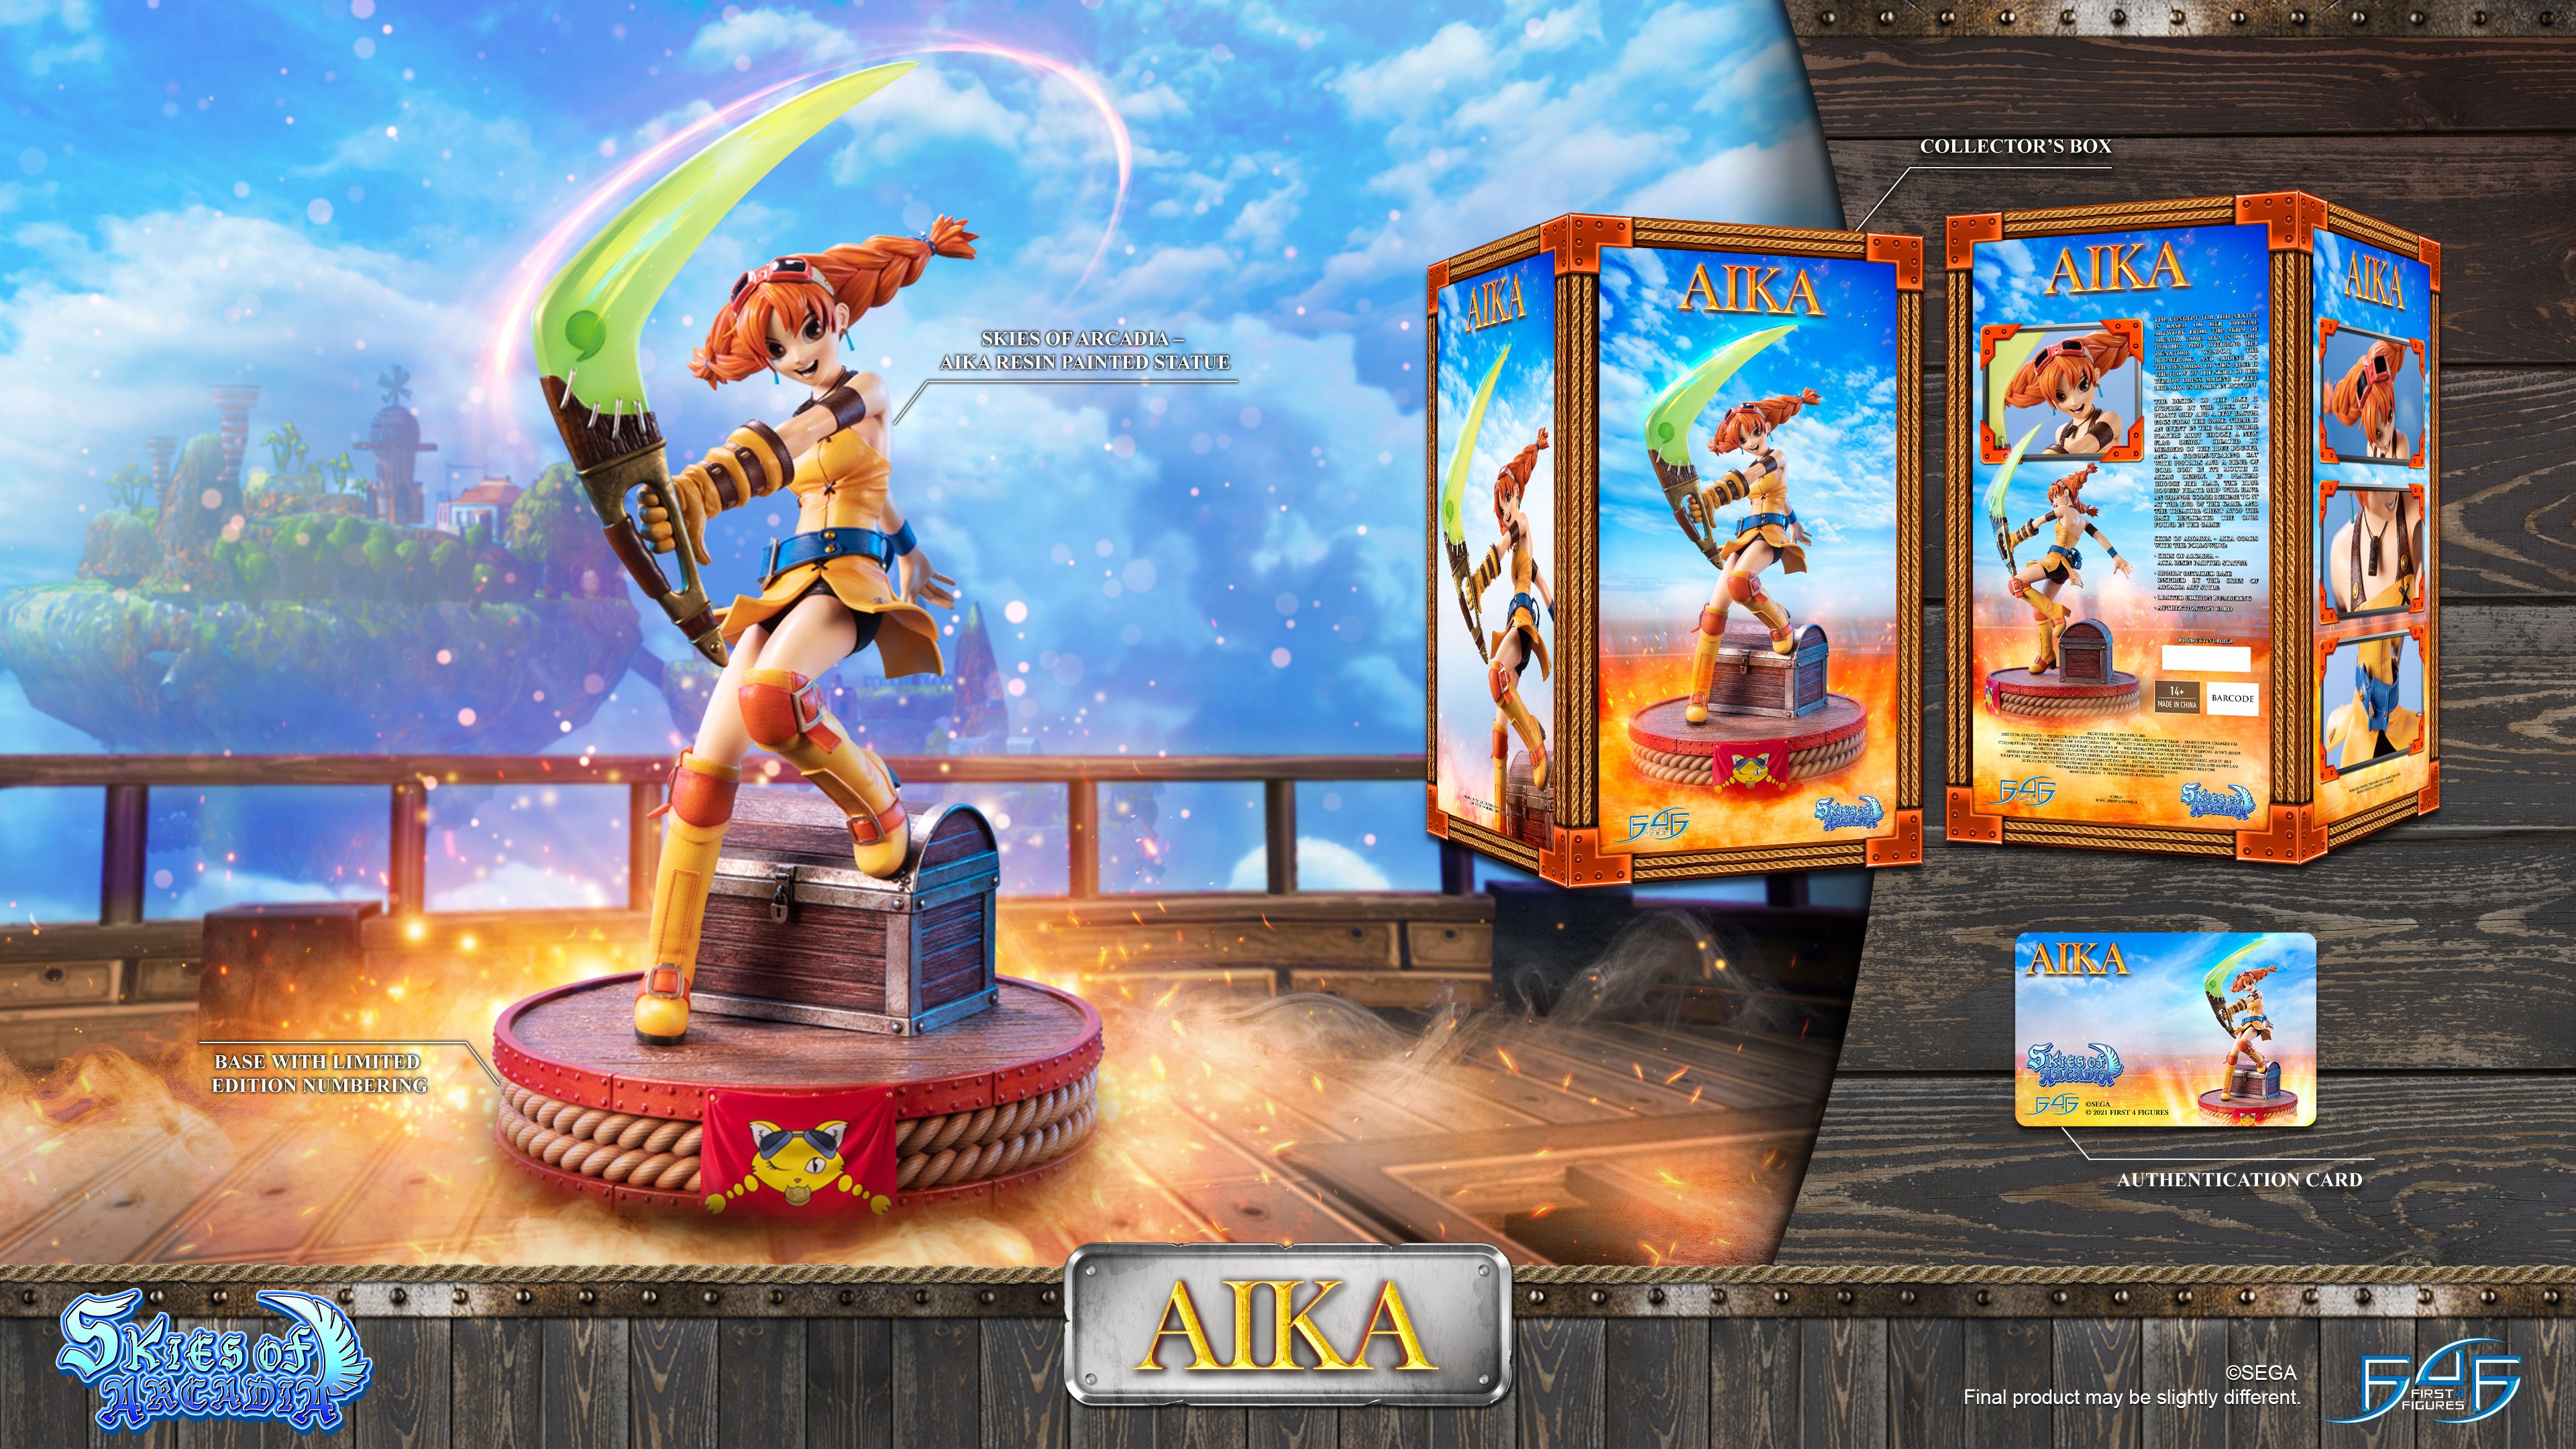 Skies of Arcadia – Aika (Standard Edition)